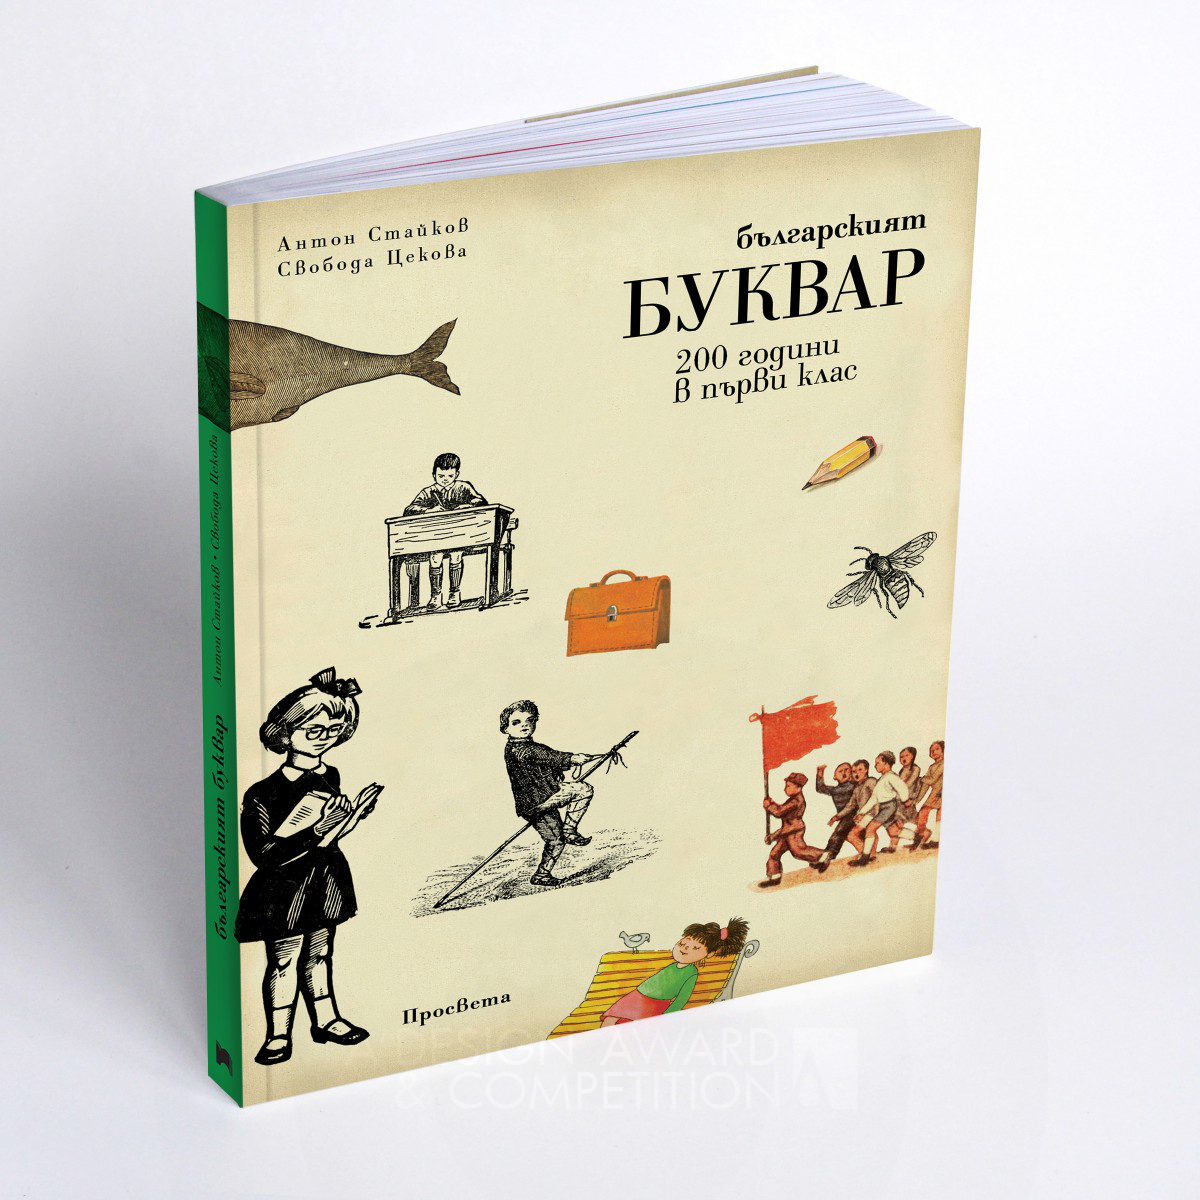 Bulgarian ABC Book History Book / Encyclopedia by Svoboda Tzekova